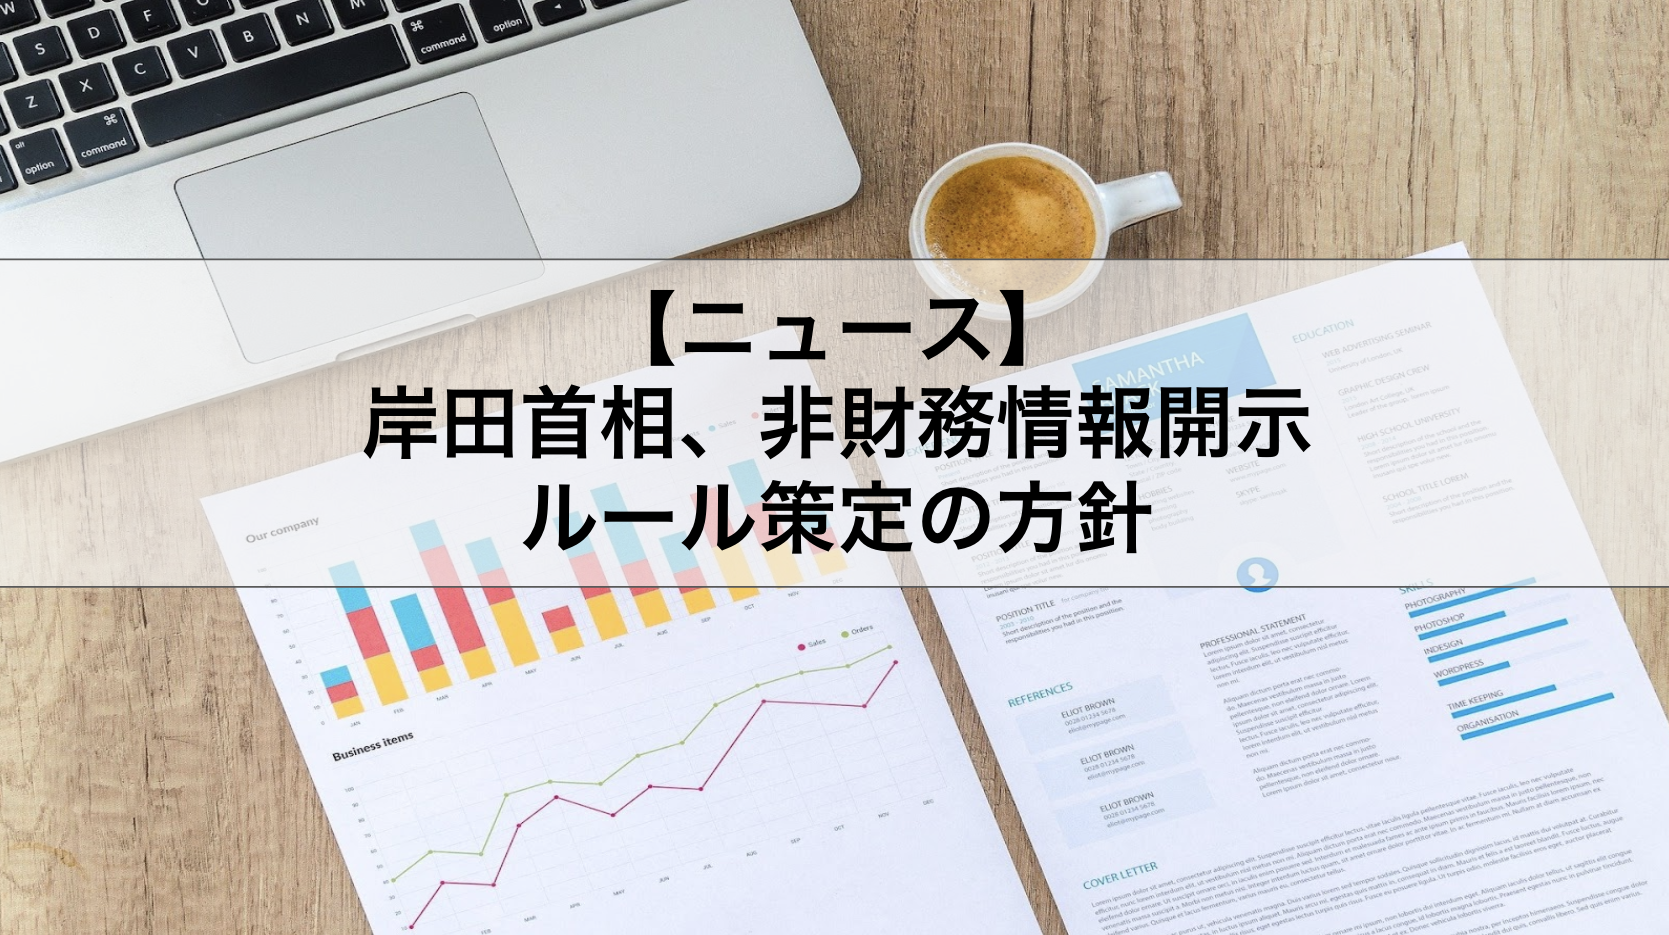 岸田首相、非財務情報開示ルール策定の方針